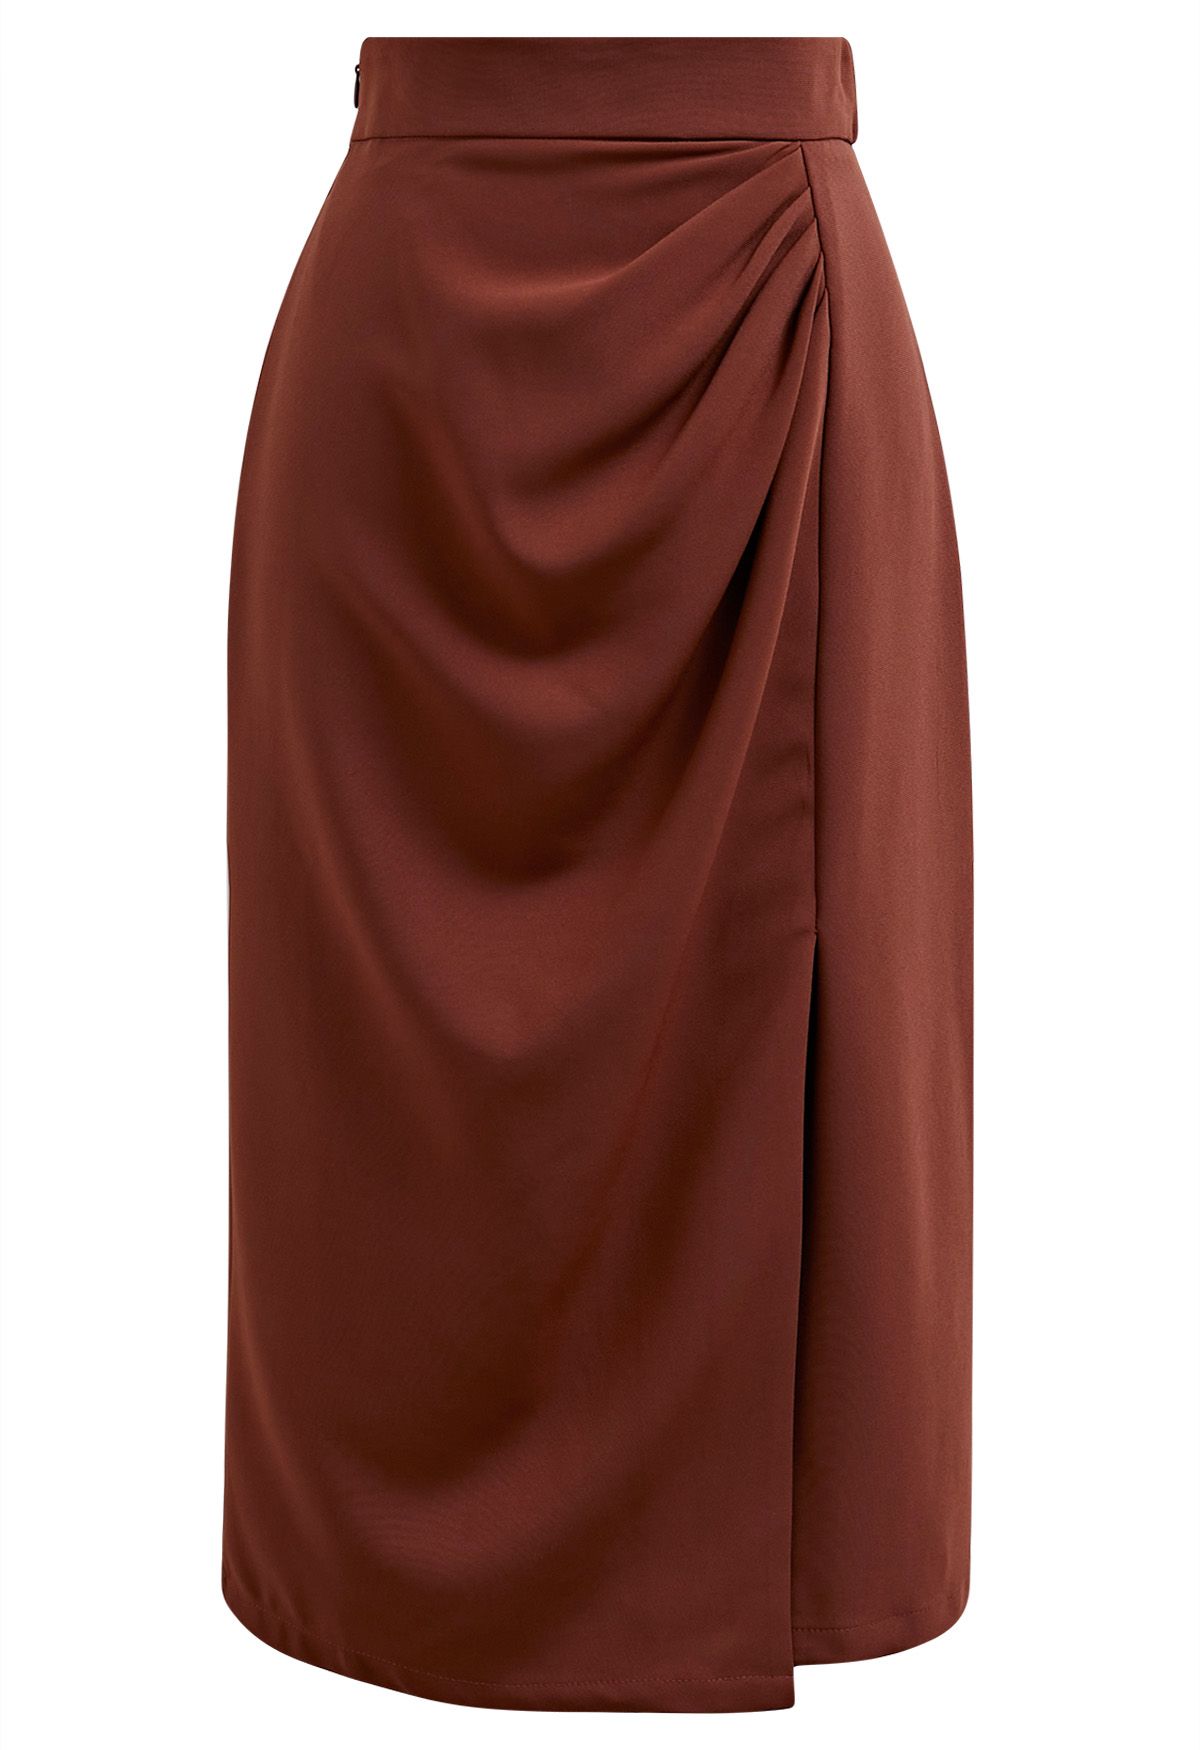 Encantadora falda de tubo con abertura delantera y pliegues en color óxido